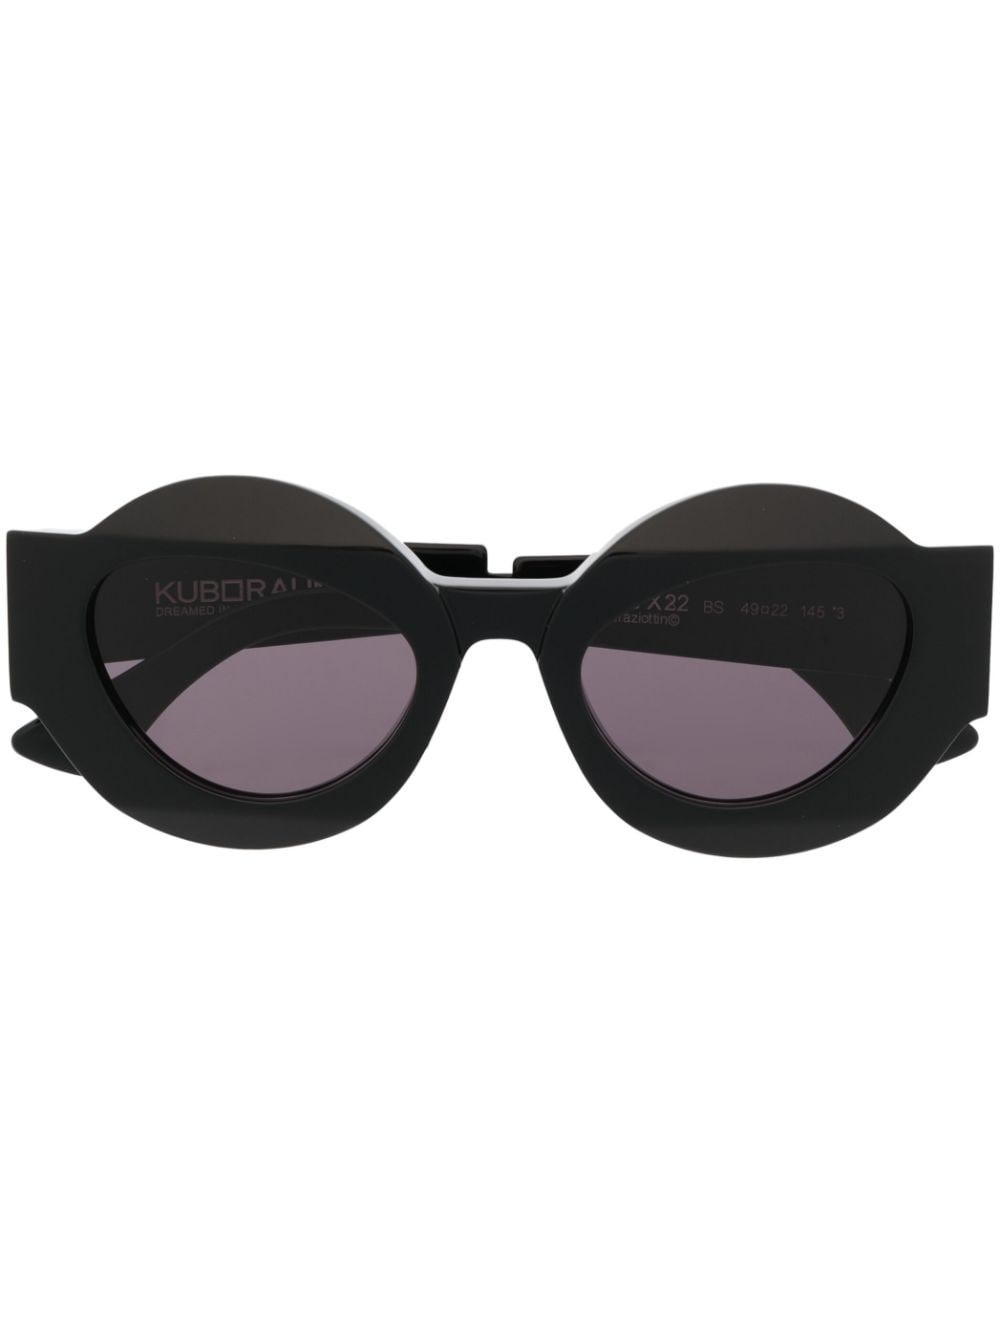 Kuboraum X22 tinted sunglasses - Black von Kuboraum